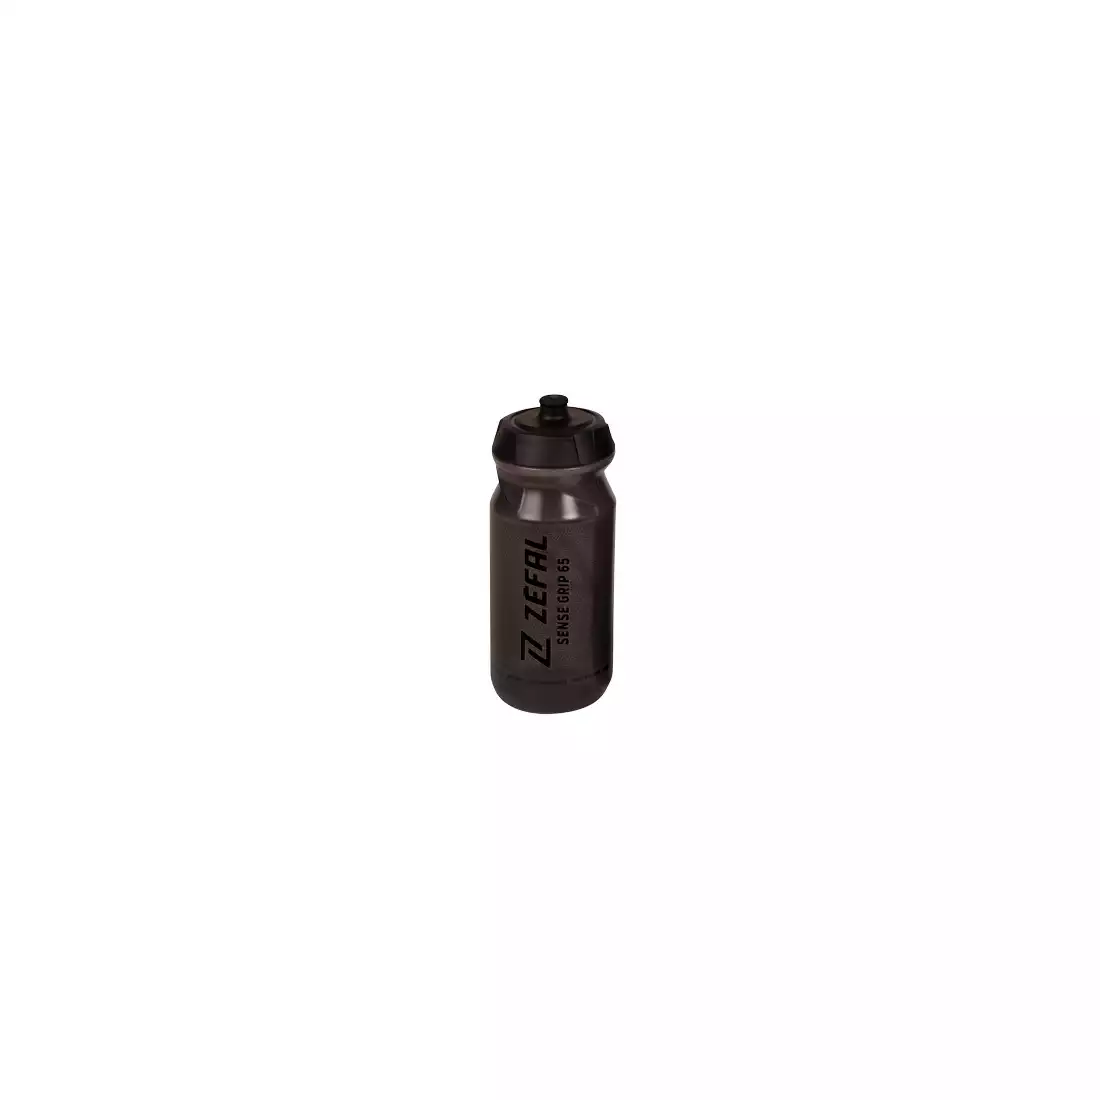 ZEFAL BIDON SENSE GRIP 65 SMOKED BLACK WITH BLACK PRINT 0,65L  ZF-1534